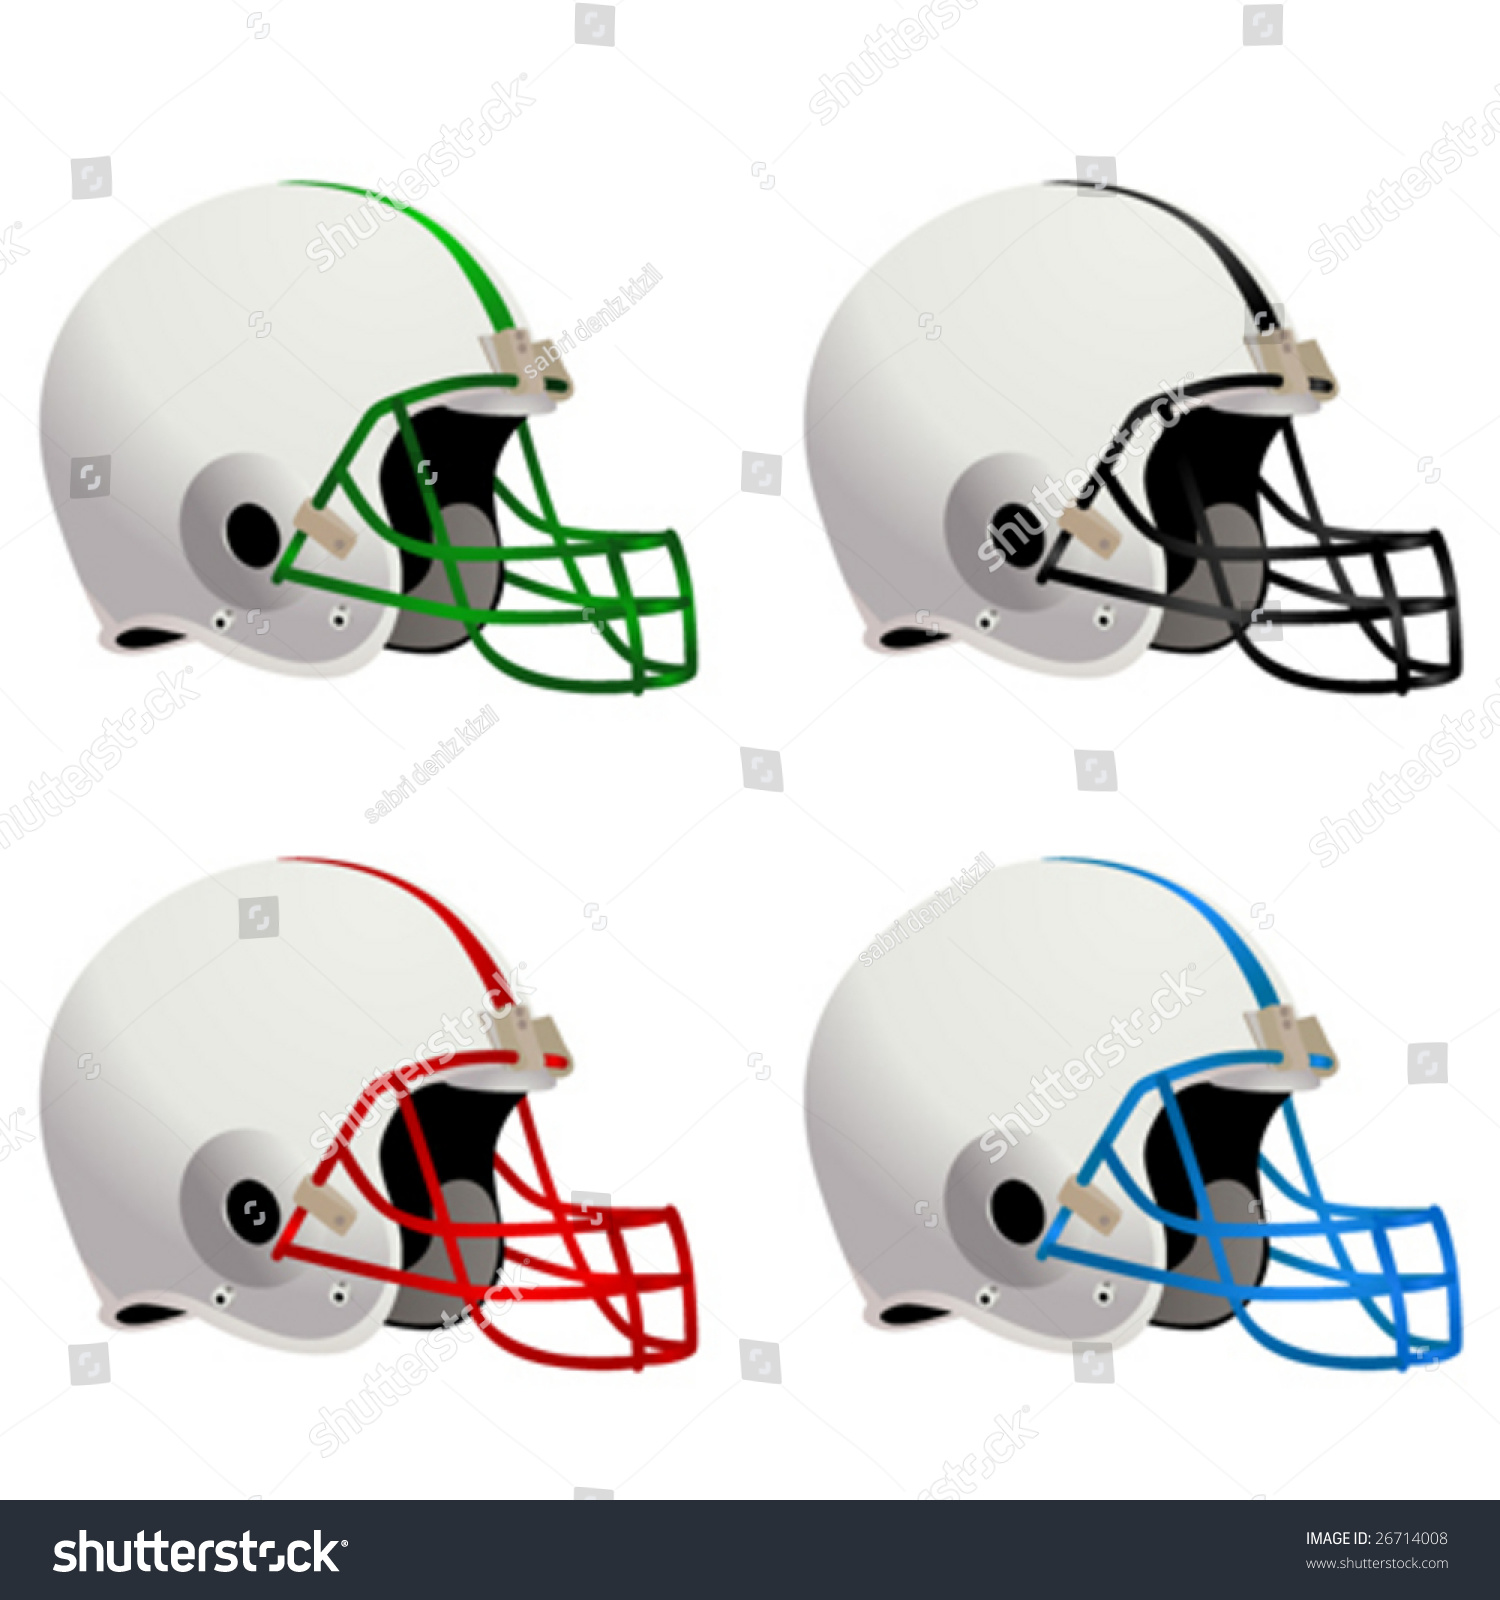 Football Helmets Vector - 26714008 : Shutterstock